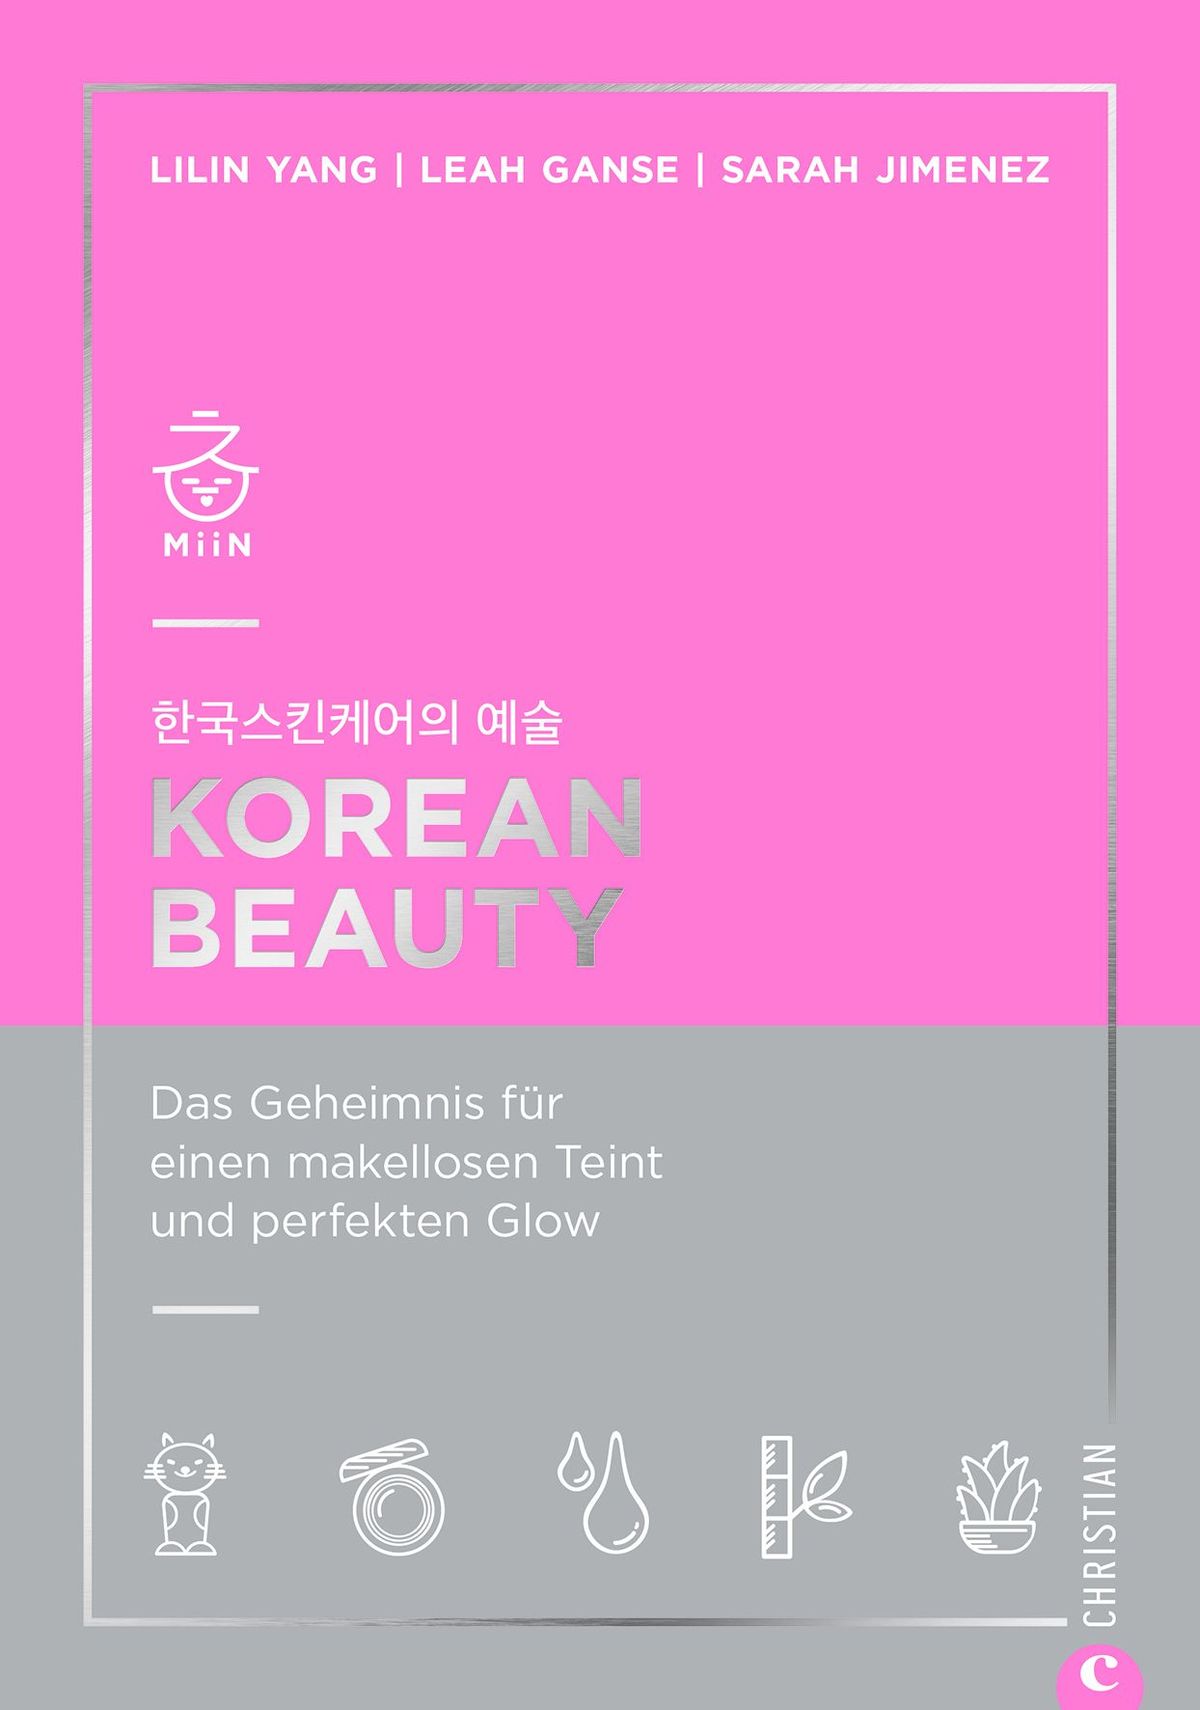 Korean Beauty. Das Geheimnis für einen makellosen Teint und perfekten Glow Lilin Yang, Leah Ganse und Sara Jiménez 192 Seiten, 16,99 Euro, ISBN 978-3-95961-495-5